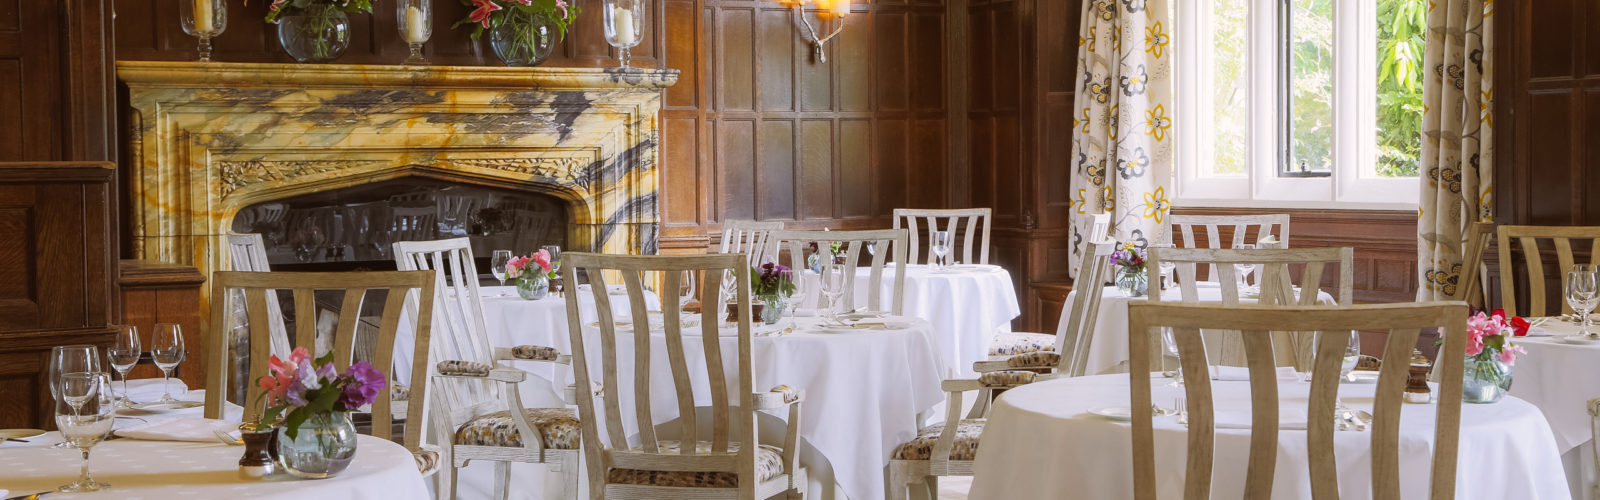 gravetye-manor-diningroom